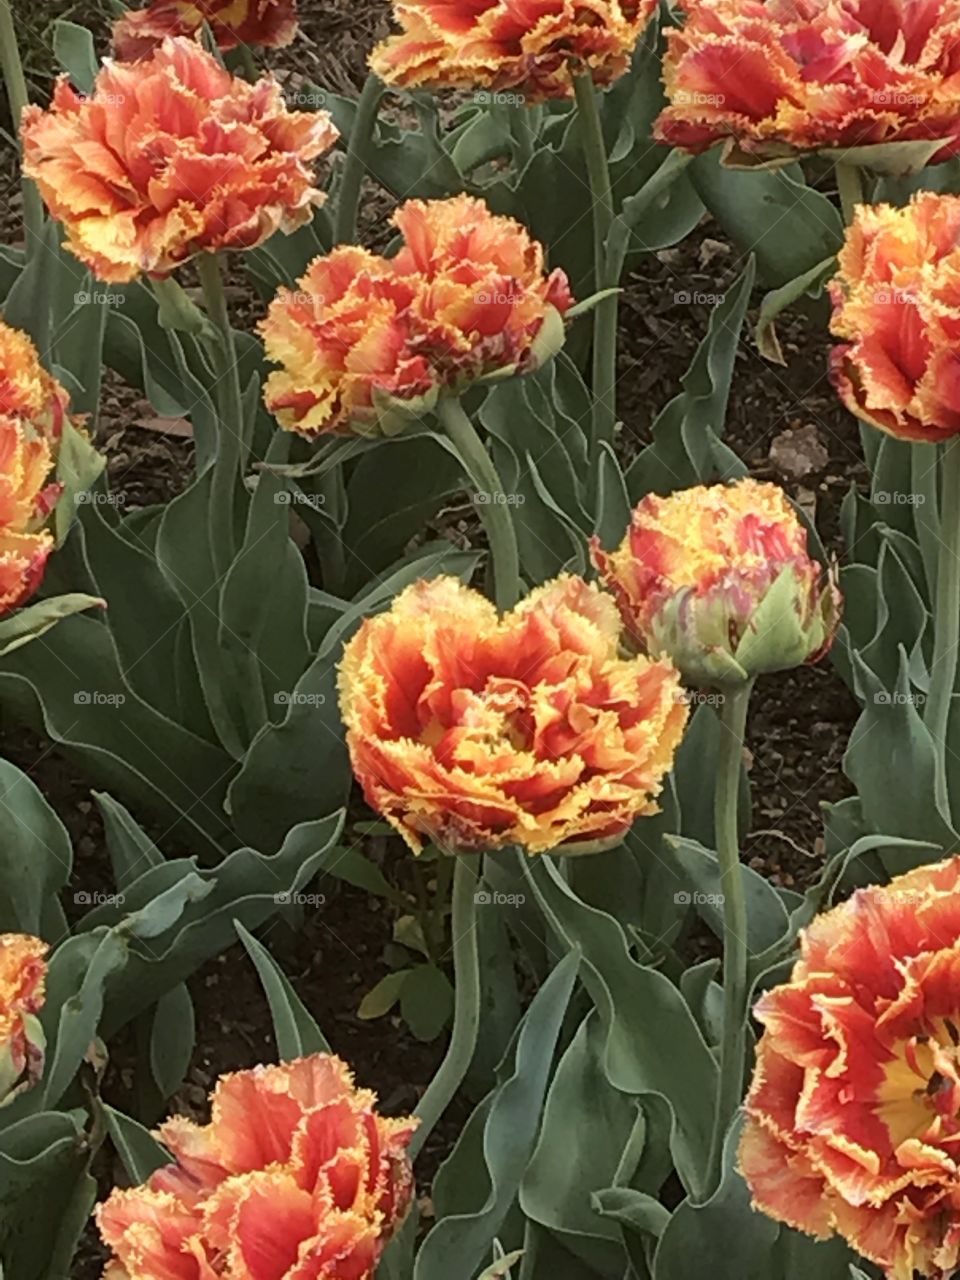 Tulips galore